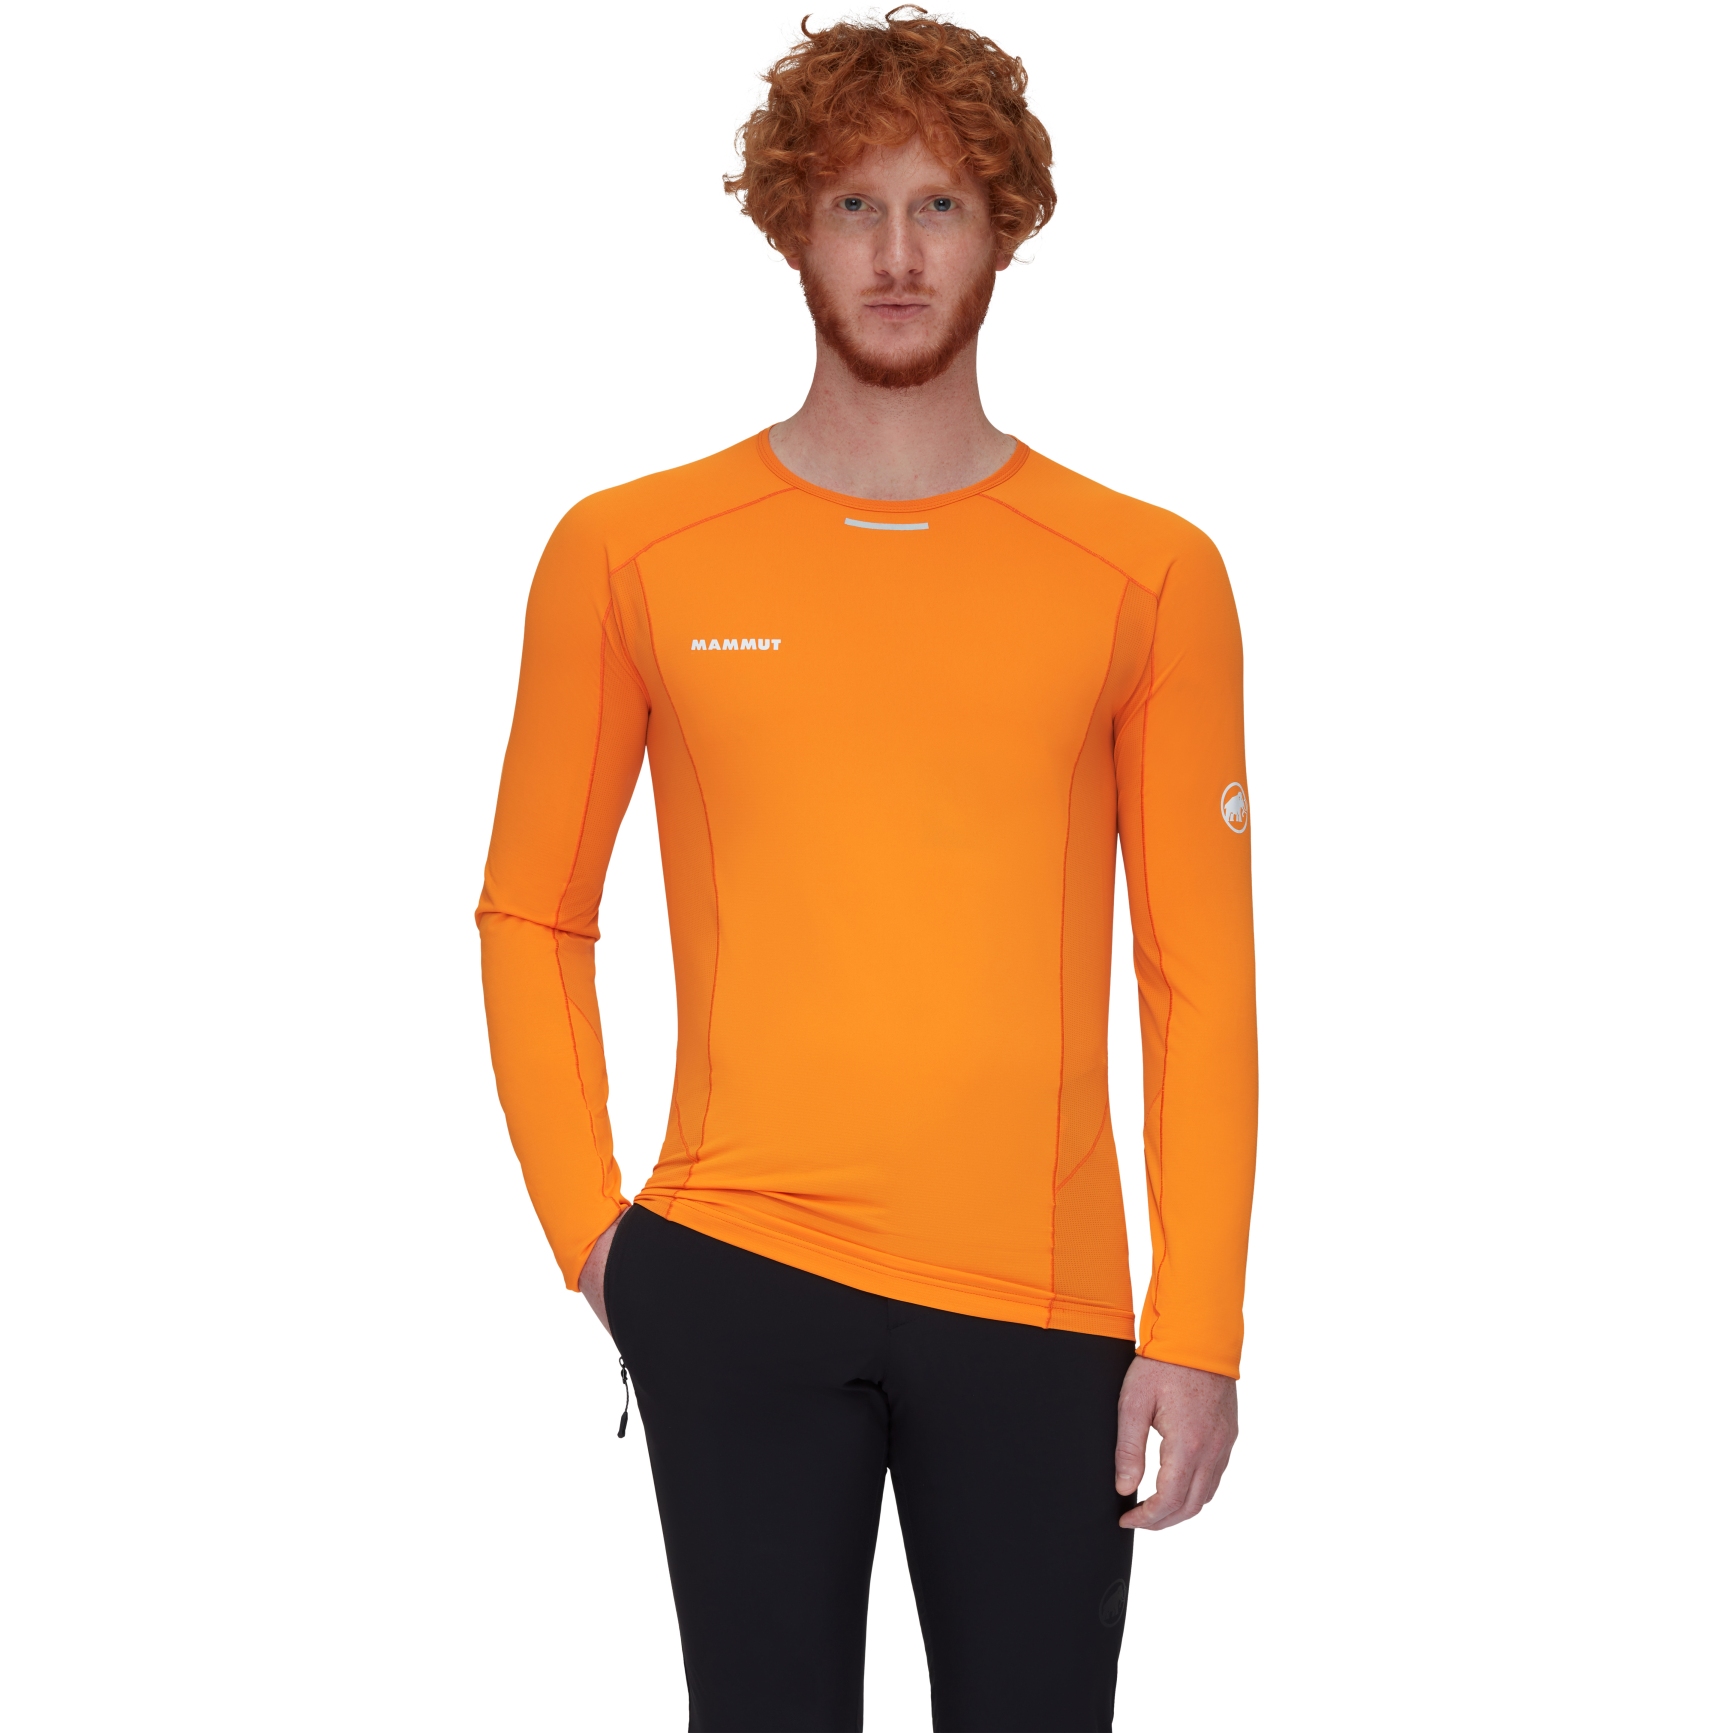 Productfoto van Mammut Aenergy Shirt met Lange Mouwen Heren - tangerine-dark tangerine